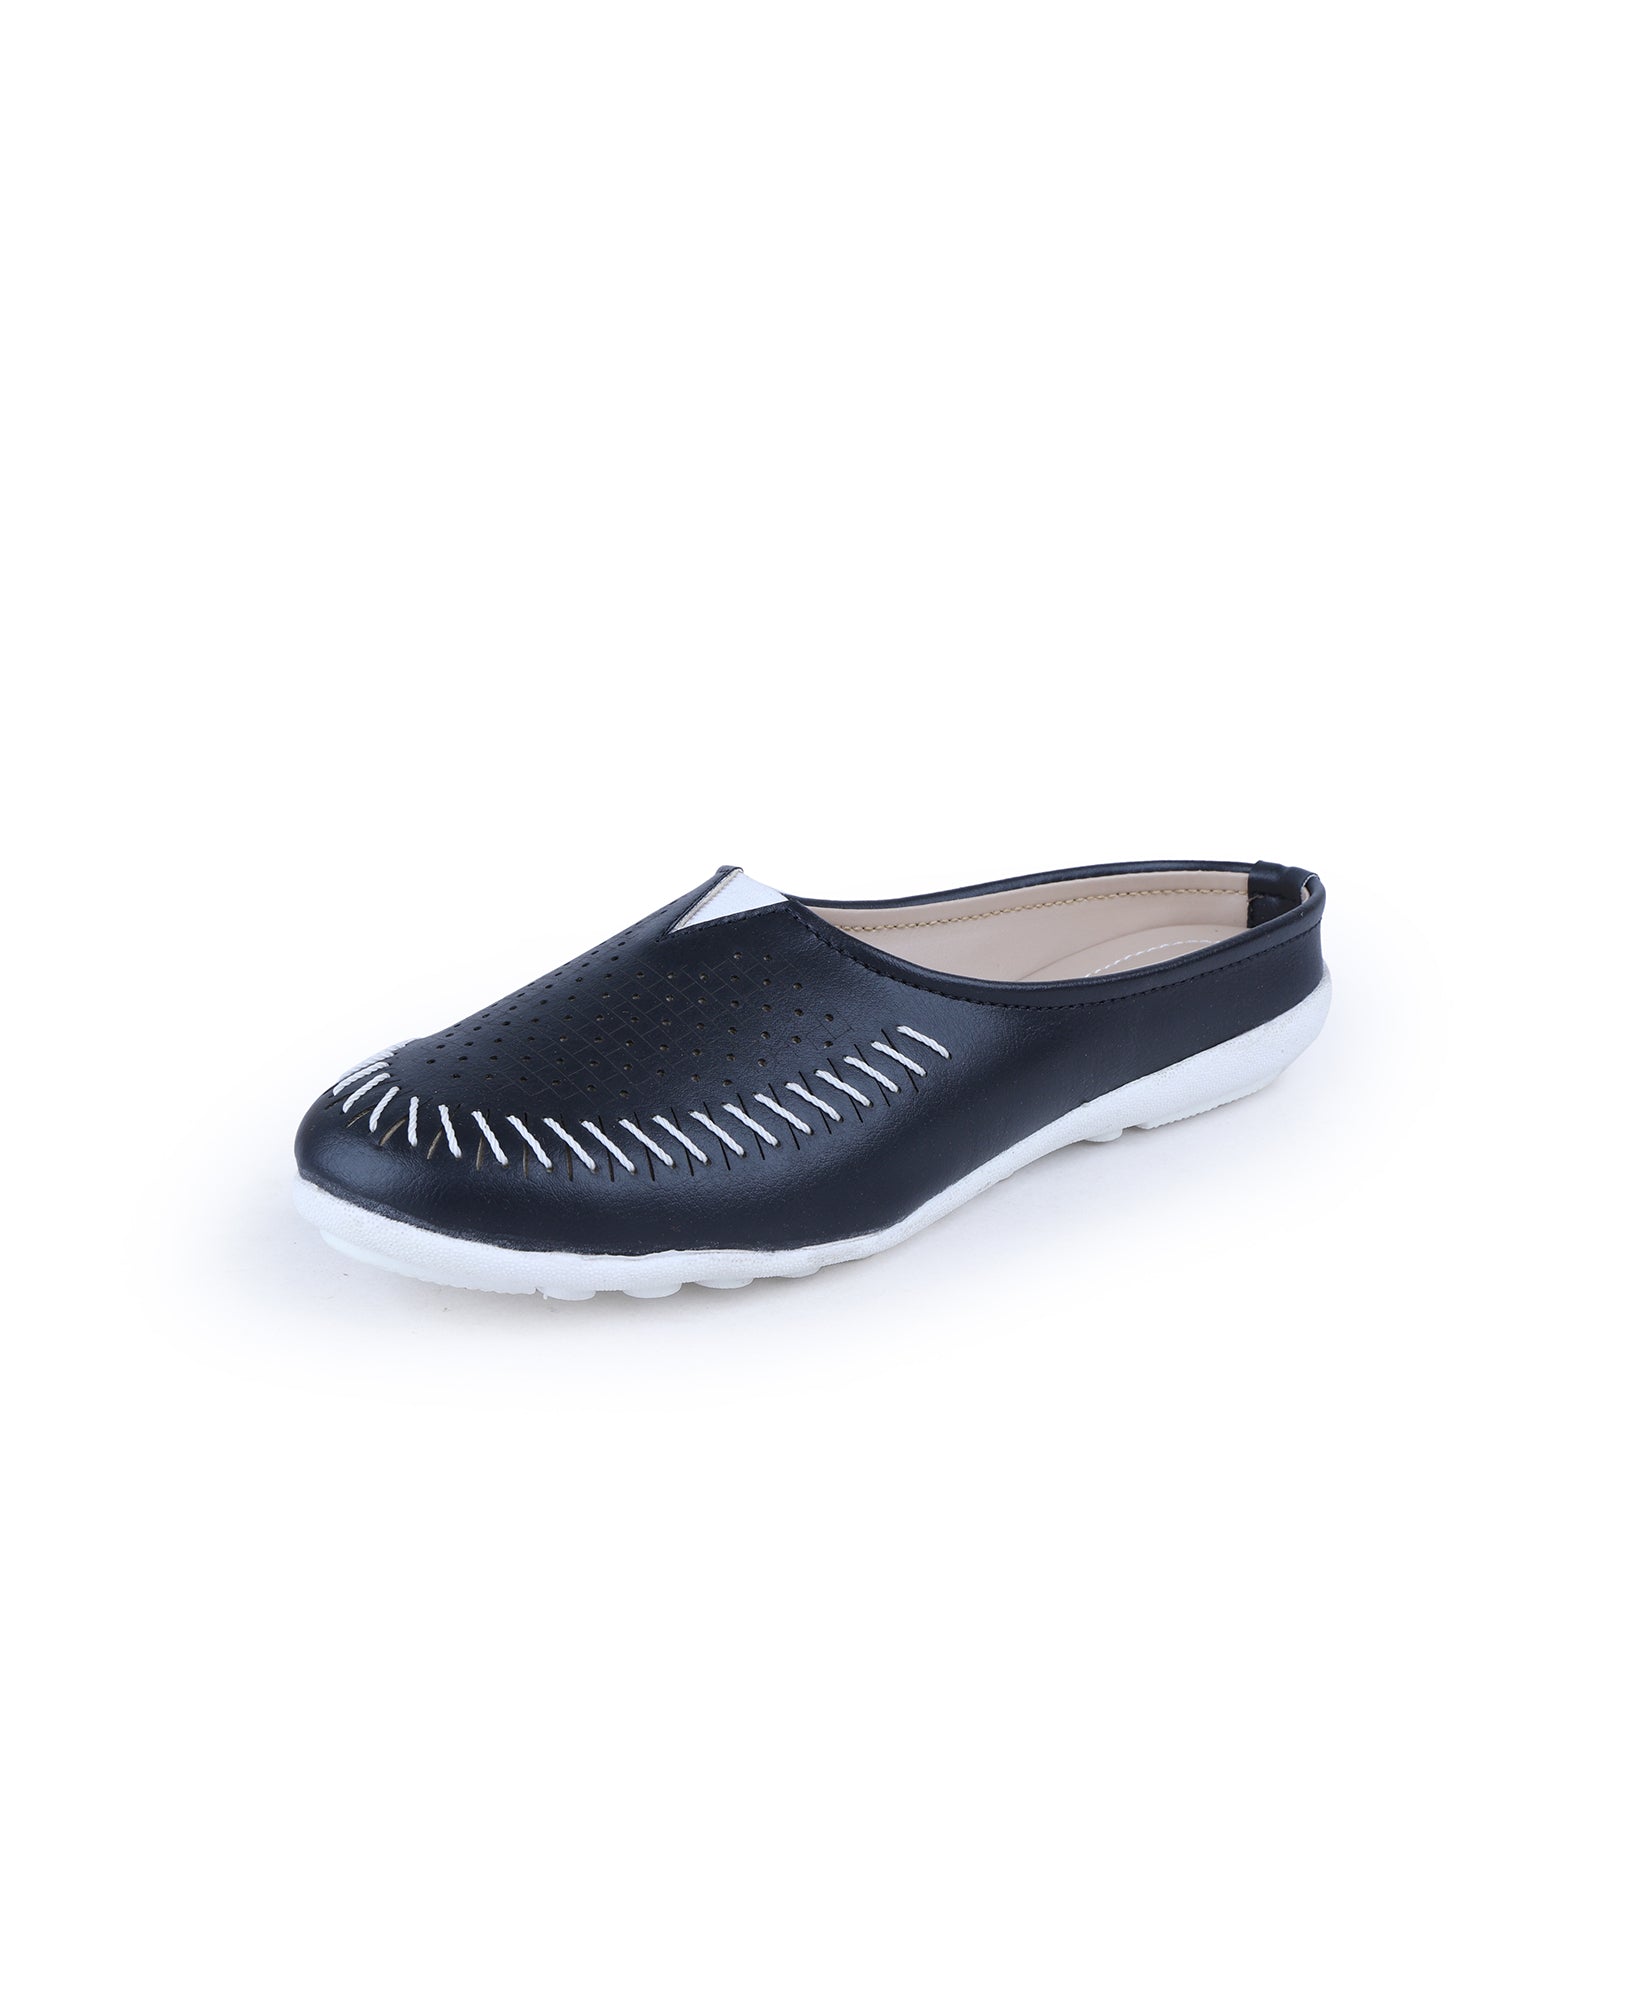 104438 Ladies Half Shoe (Black) – Sreeleathers Ltd